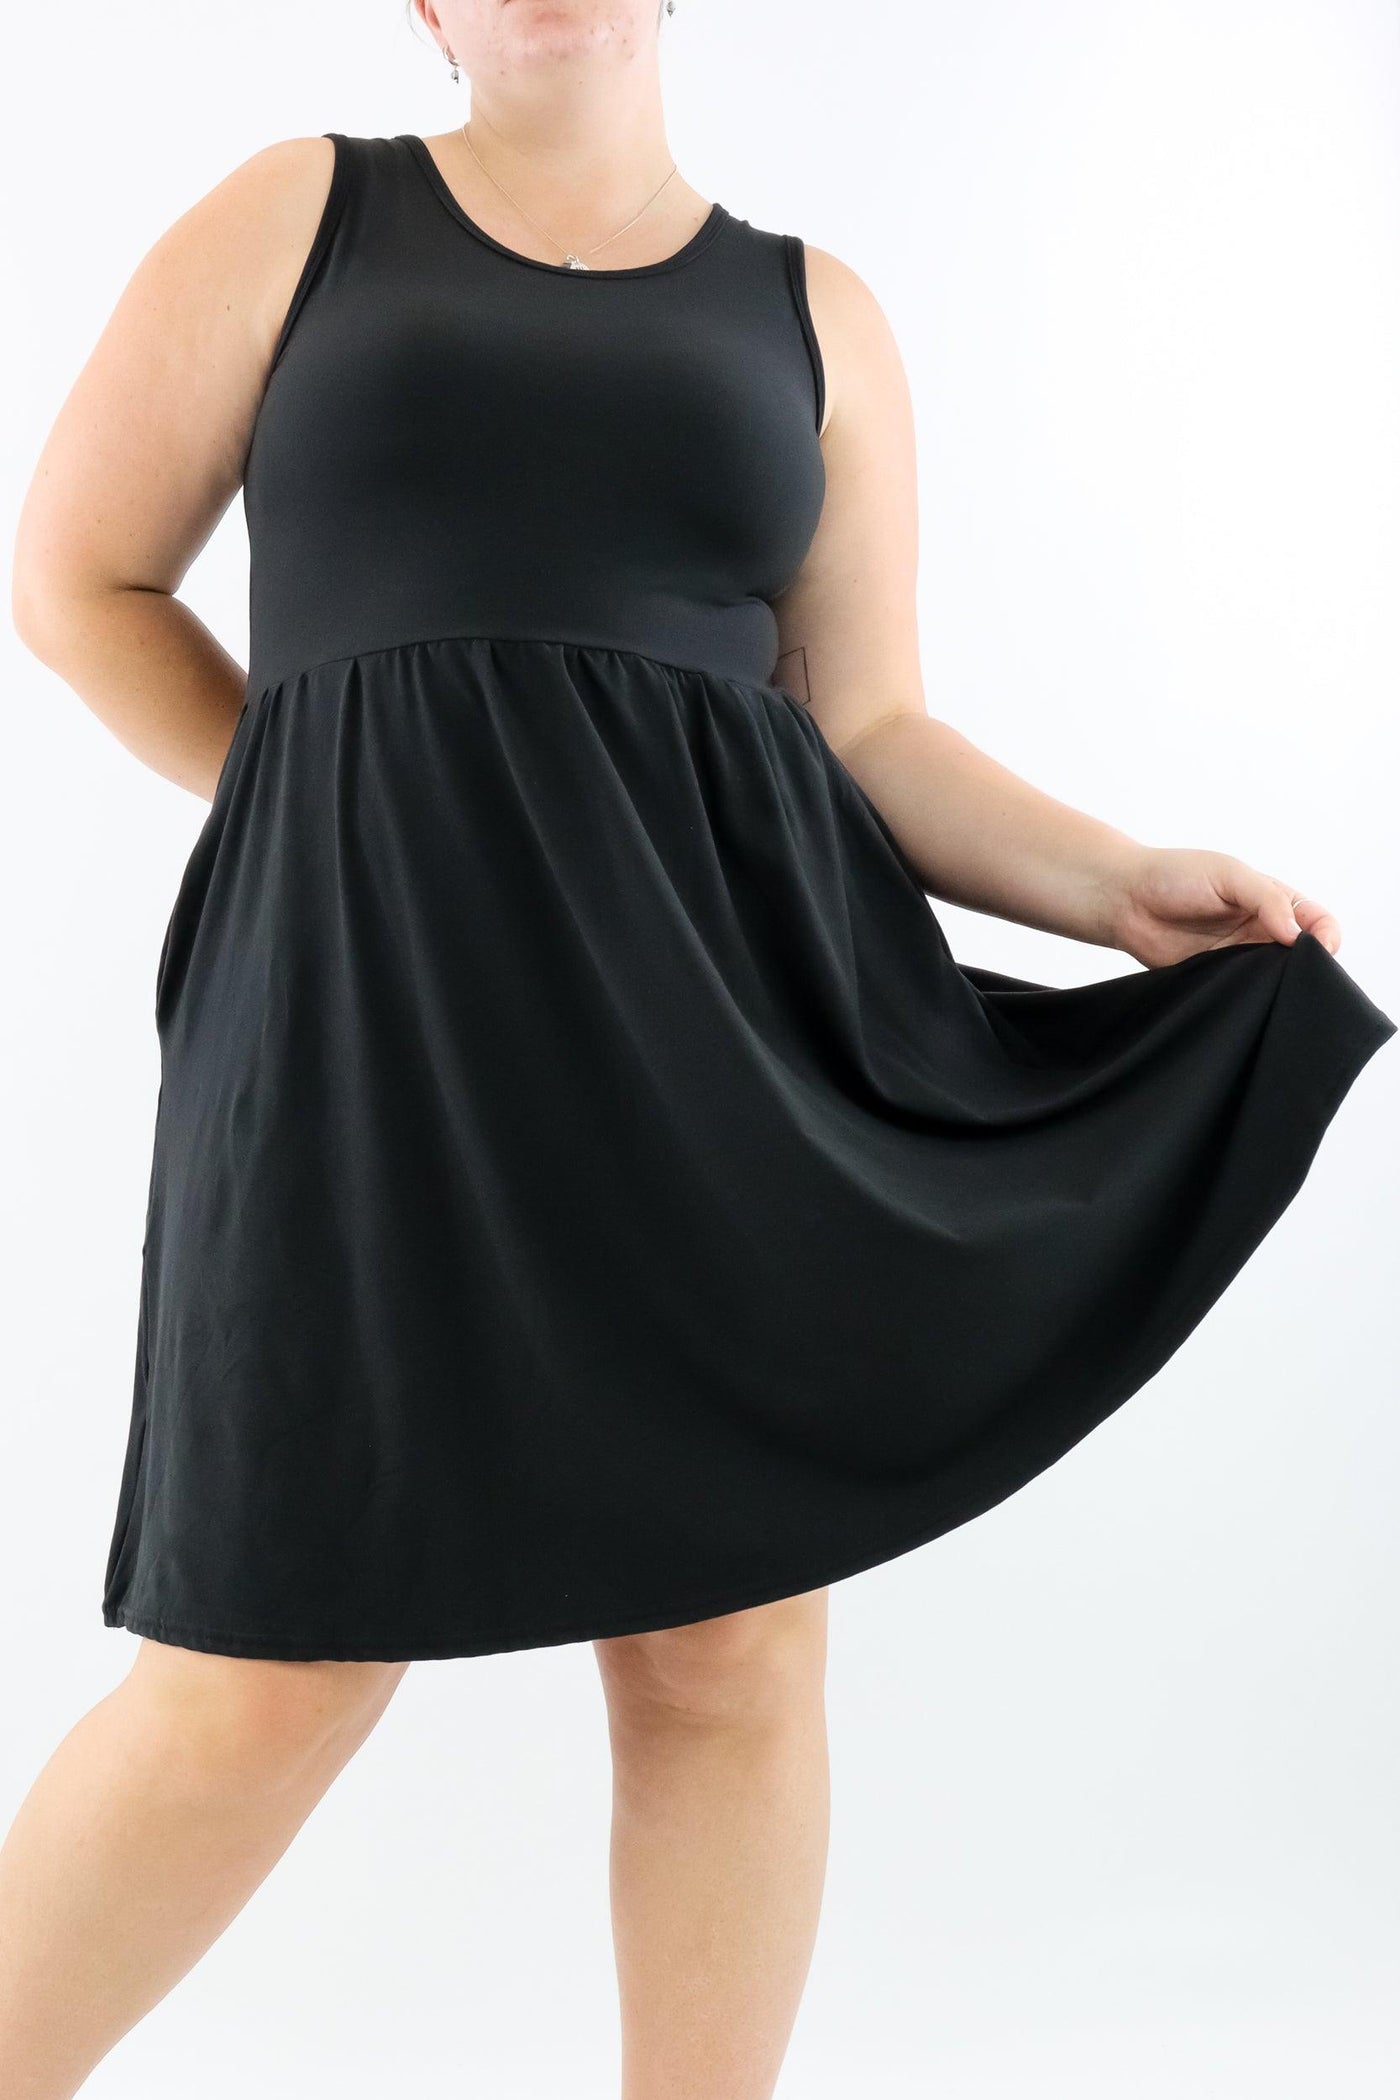 Black - Sleeveless Skater Dress - Knee Length - Side Pockets